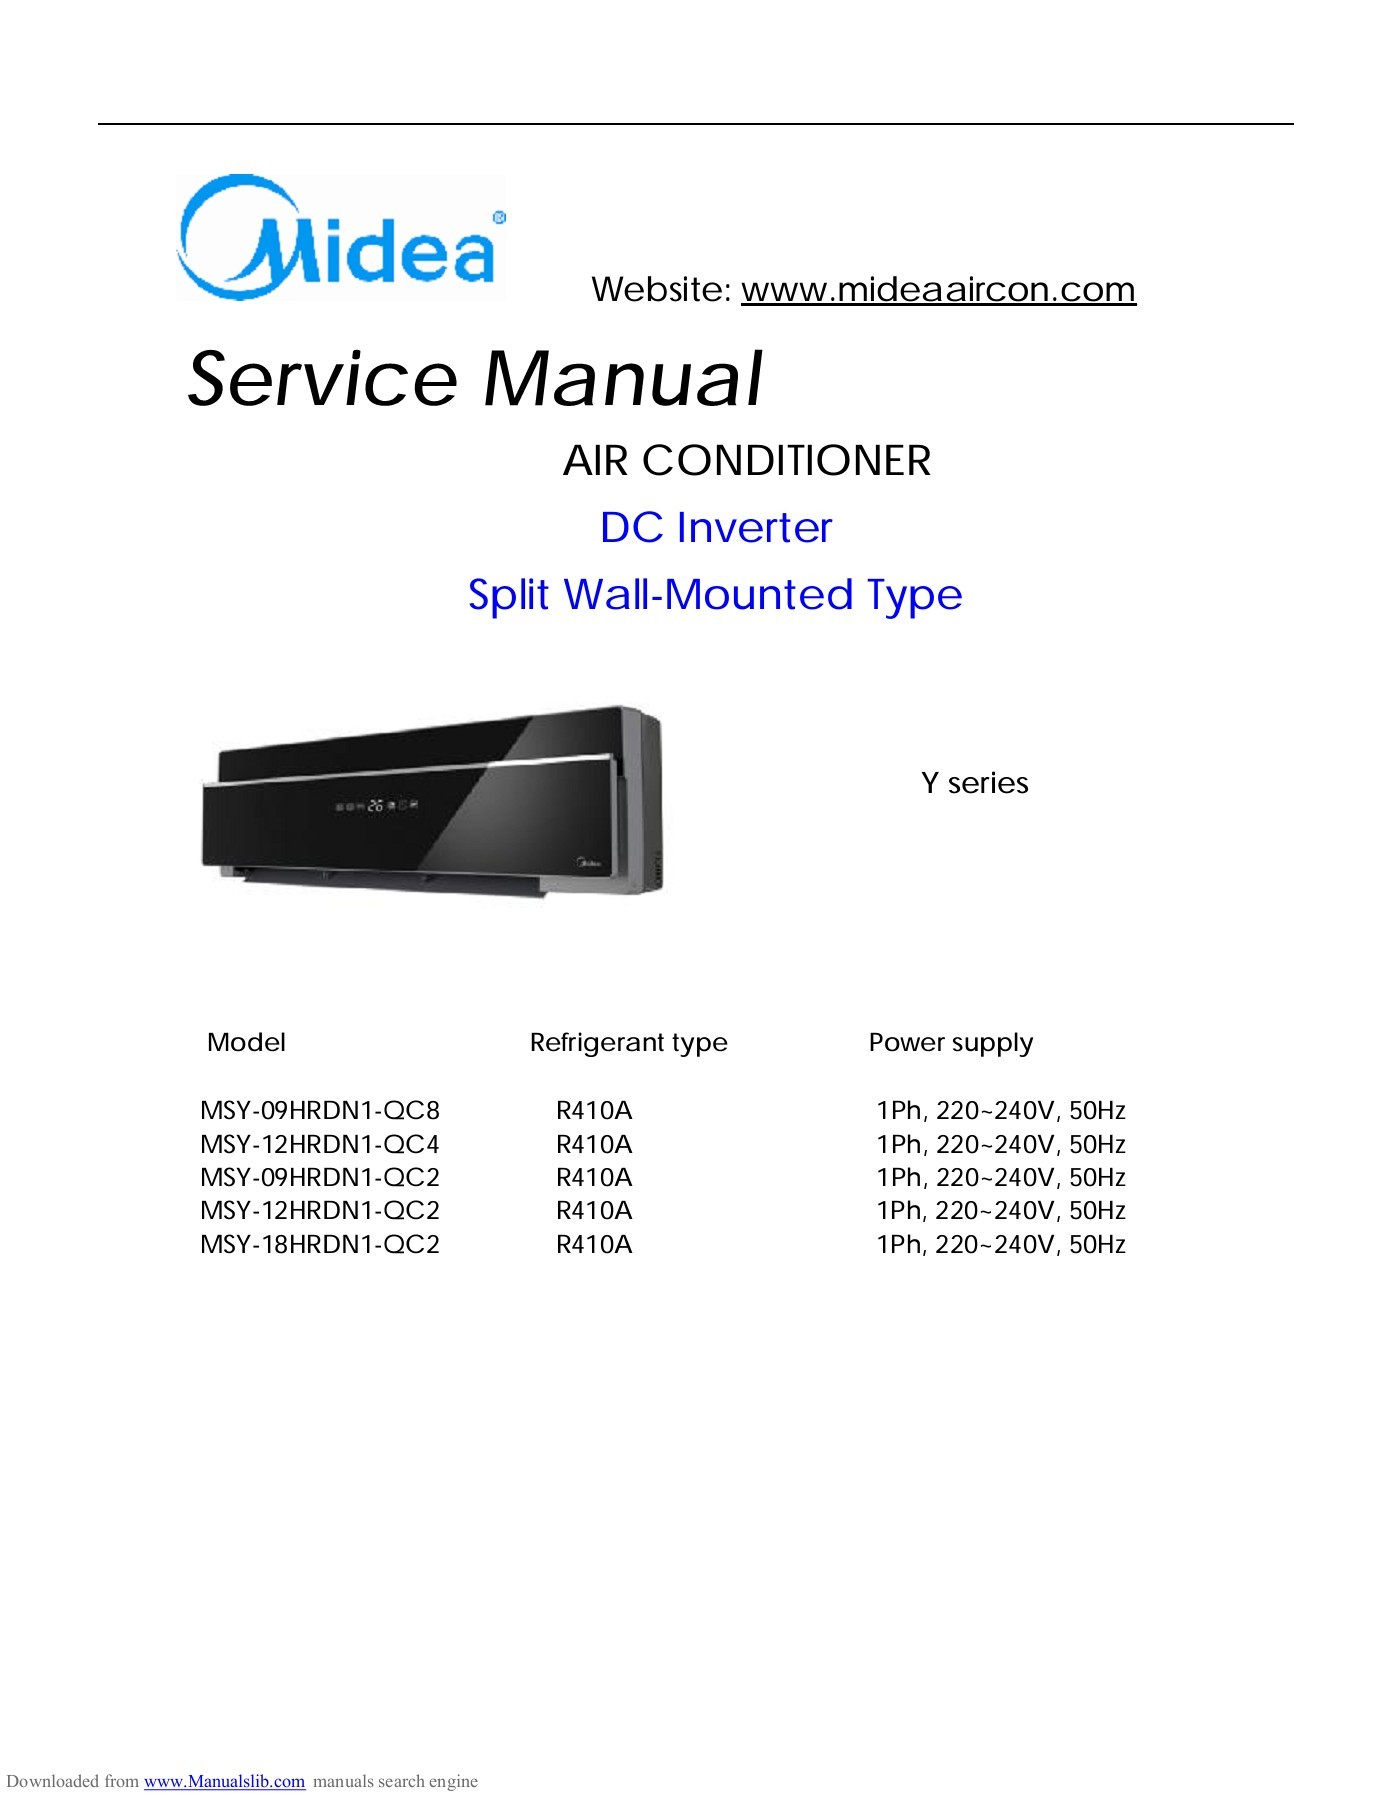 Midea portable air conditioner manual